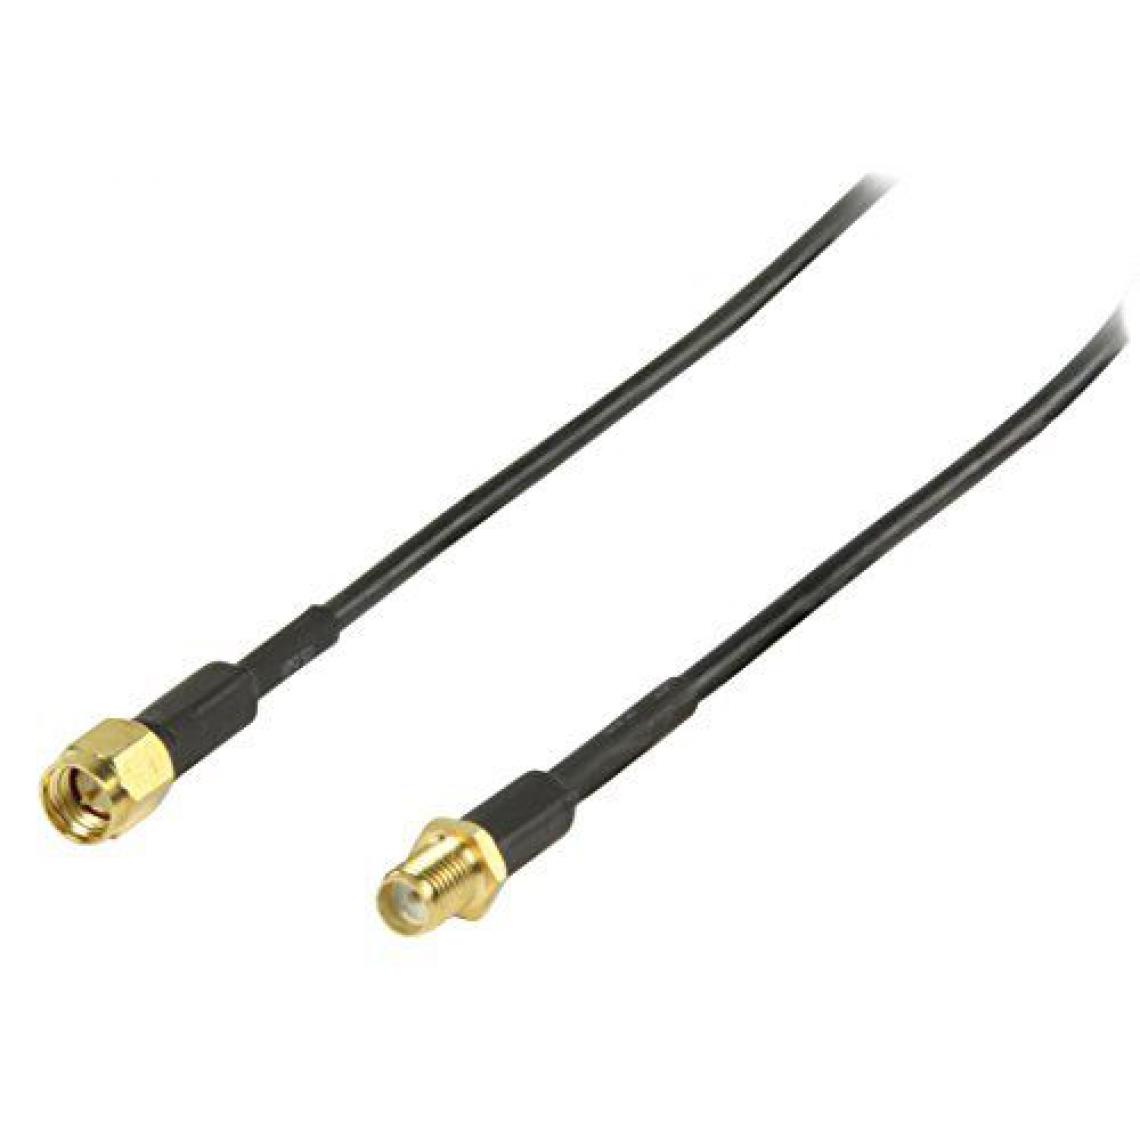 Inconnu - Valueline VGSP02010B20 Câble 2 m Noir - Modem / Routeur / Points d'accès